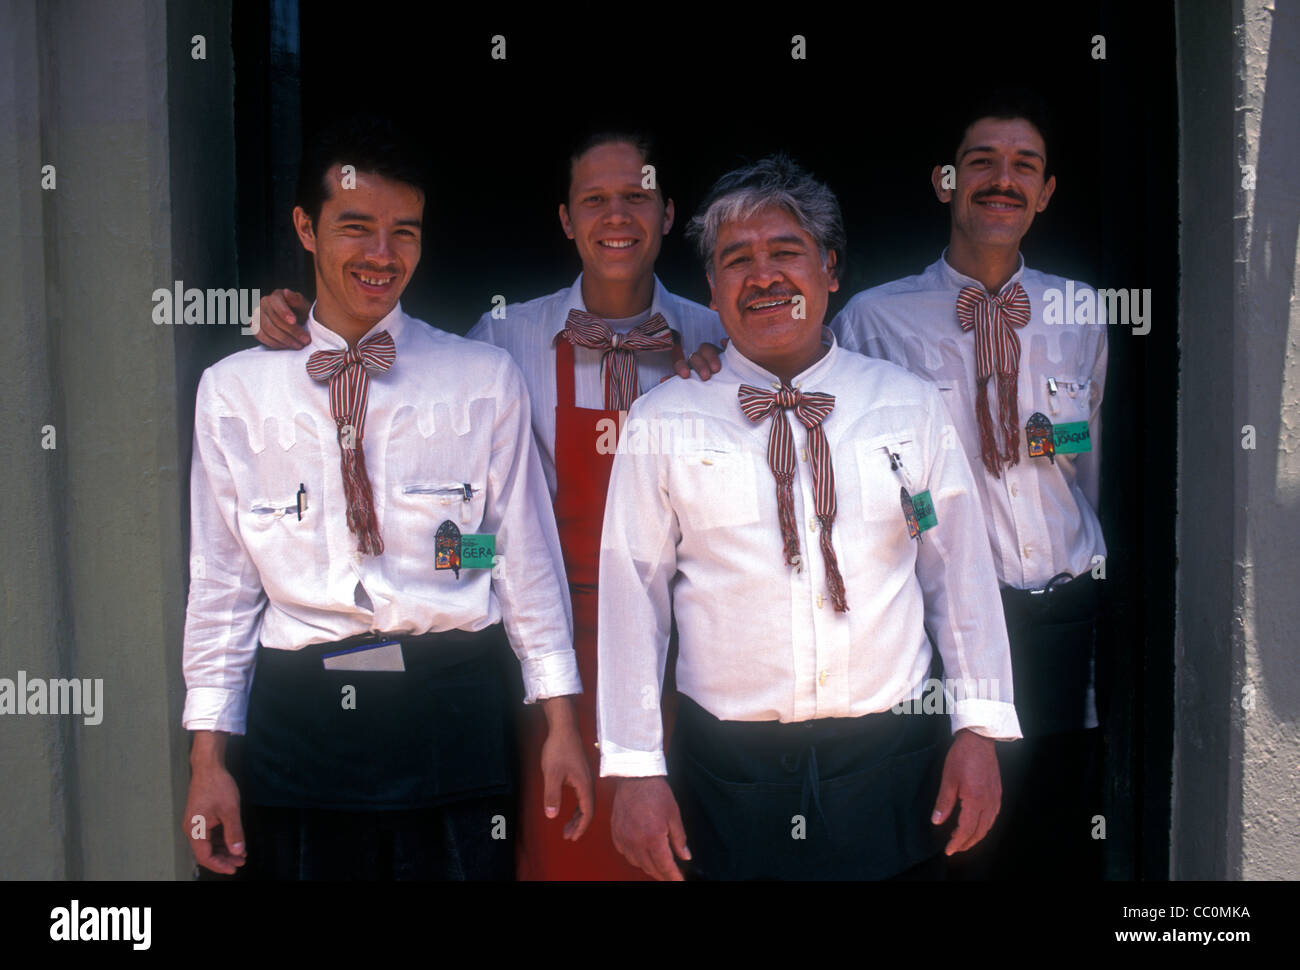 4, 4, gli uomini messicani, maschio camerieri, lavoratori, lavorando, ristorante messicano, contatto visivo, vista frontale, ritratto, Tlaquepaque, Stato di Jalisco, Messico Foto Stock